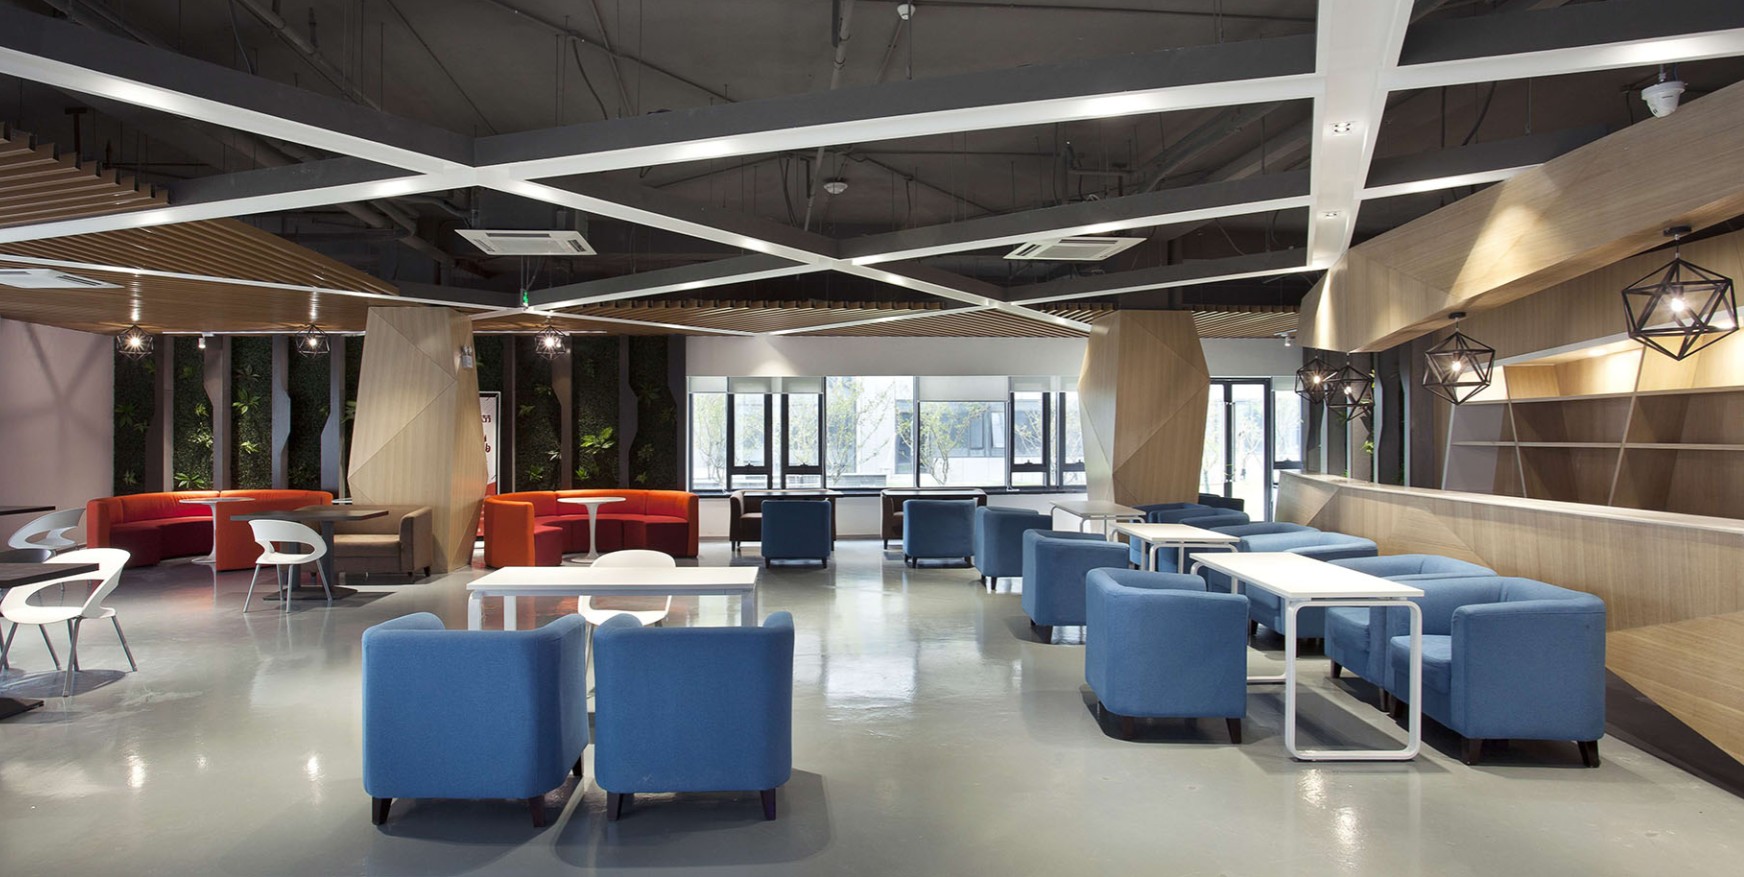 科技公司办公室设计效果图-会议室报告厅装修设计